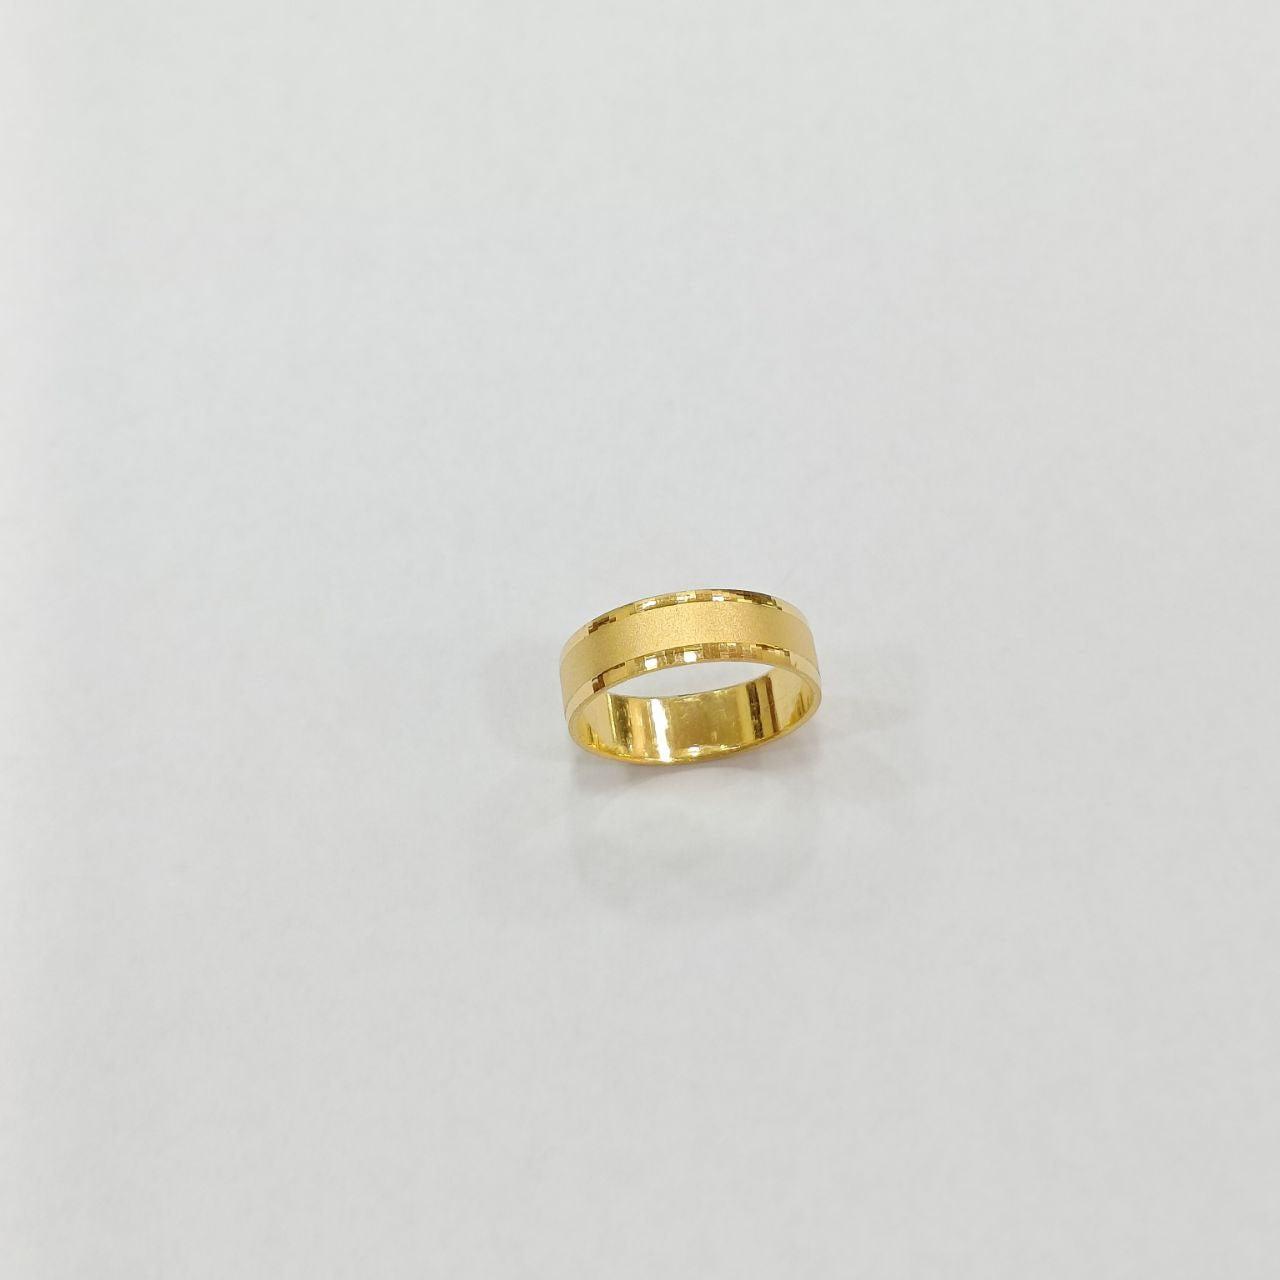 22k / 916 Gold Band Ring Matt Design-916 gold-Best Gold Shop